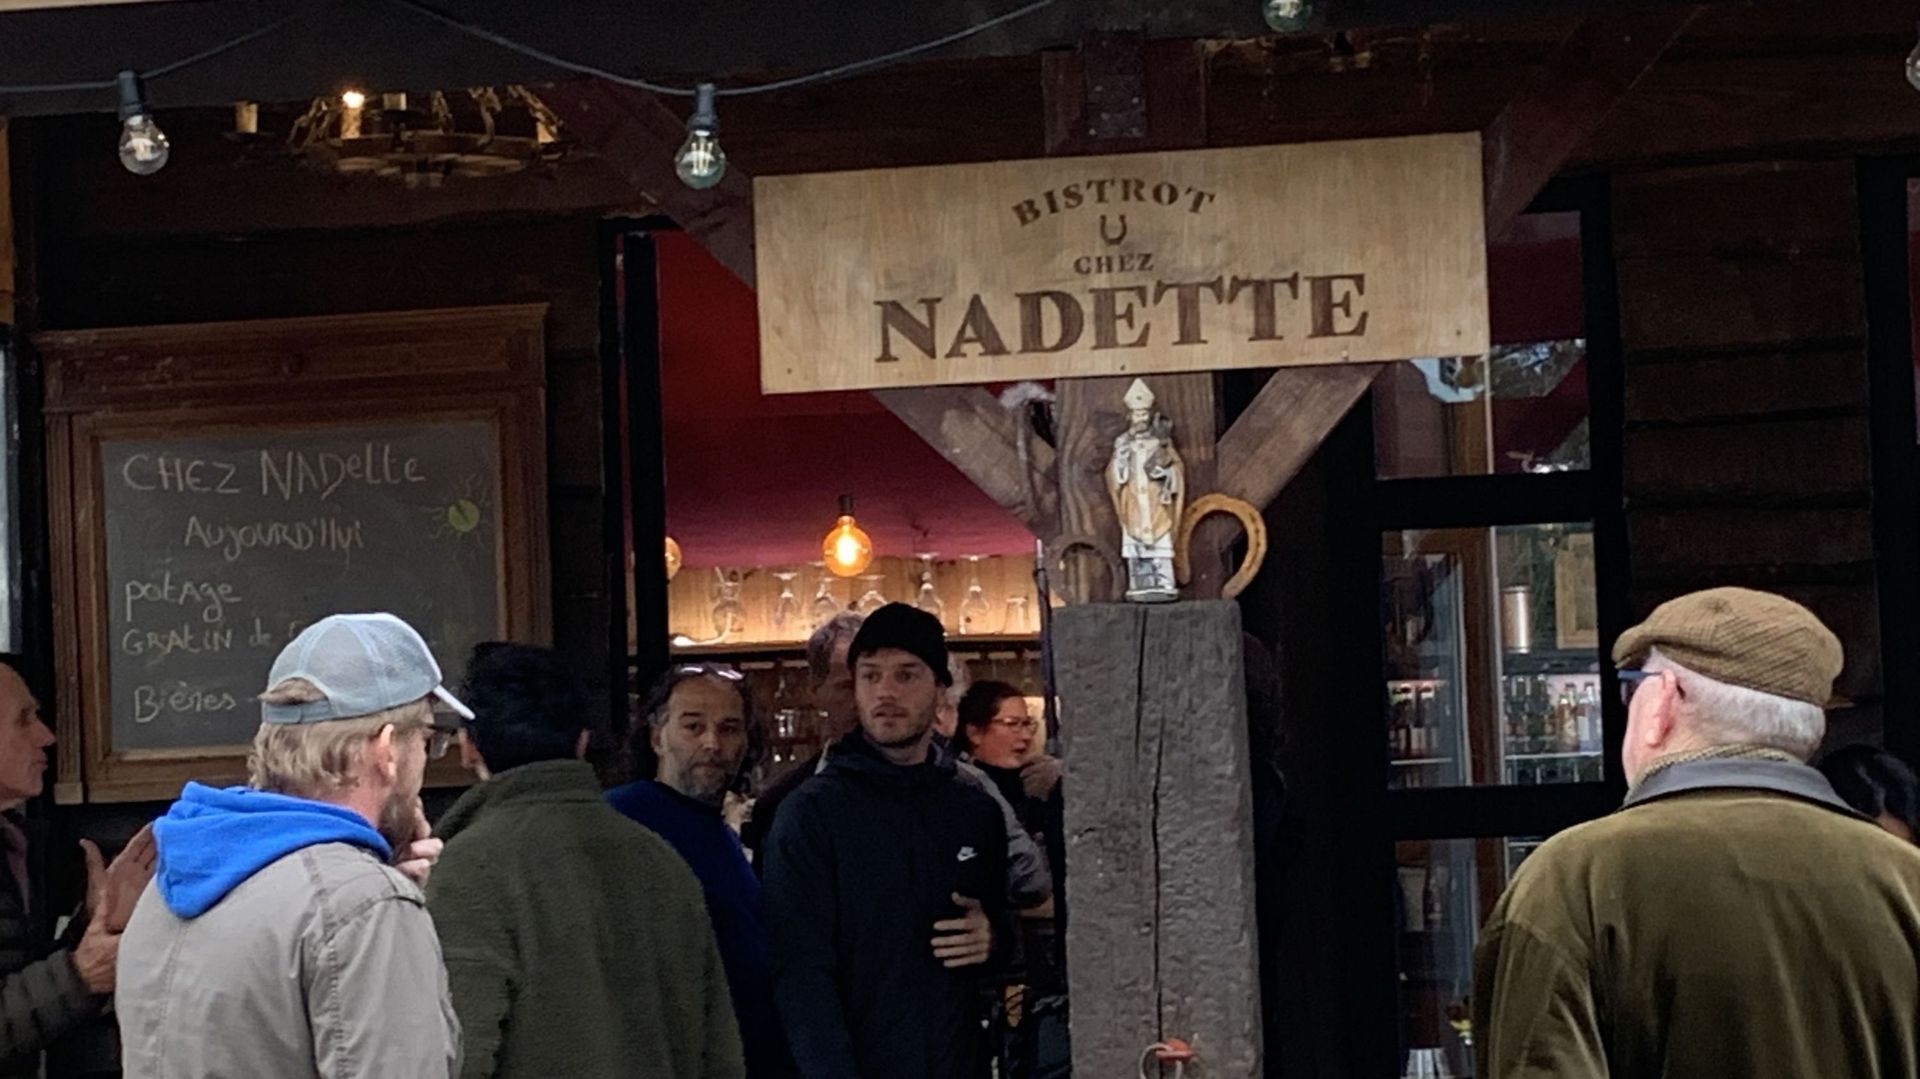 La série télévisée "Chez Nadette" à découvrir tous les jours avant le JT de 19h30